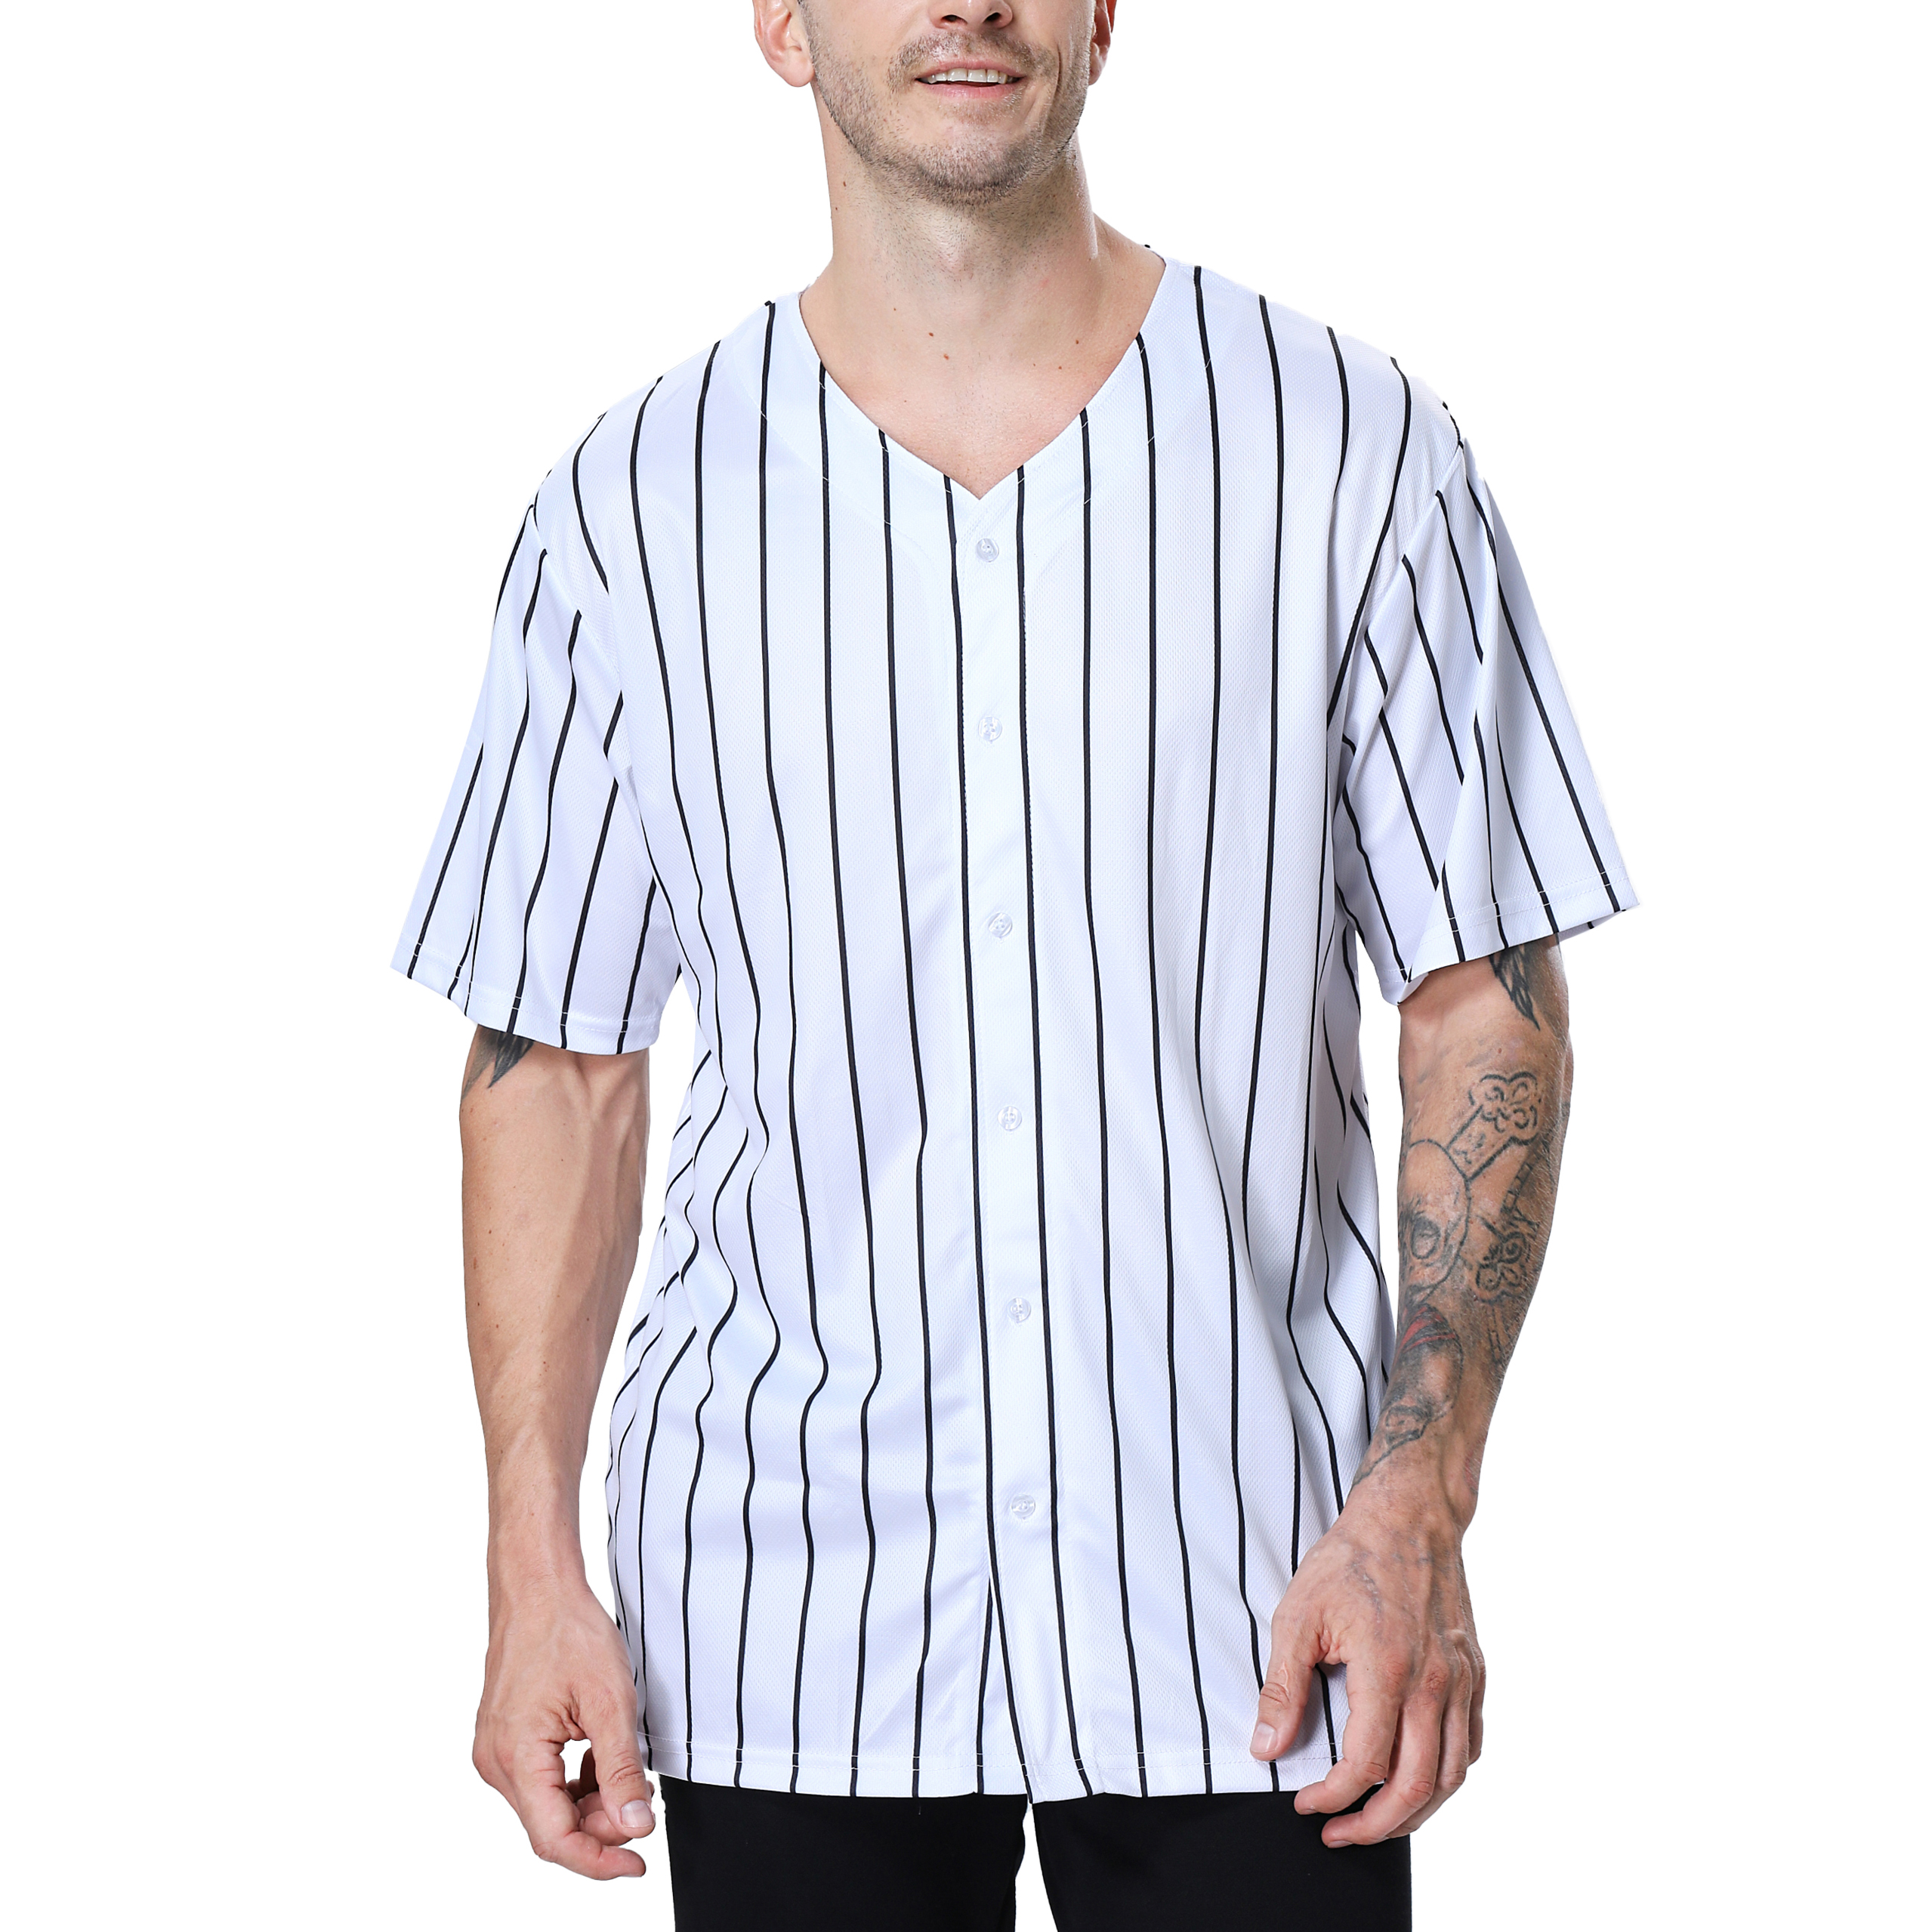  TOPTIE Custom Design Men's Baseball Jersey Full Button